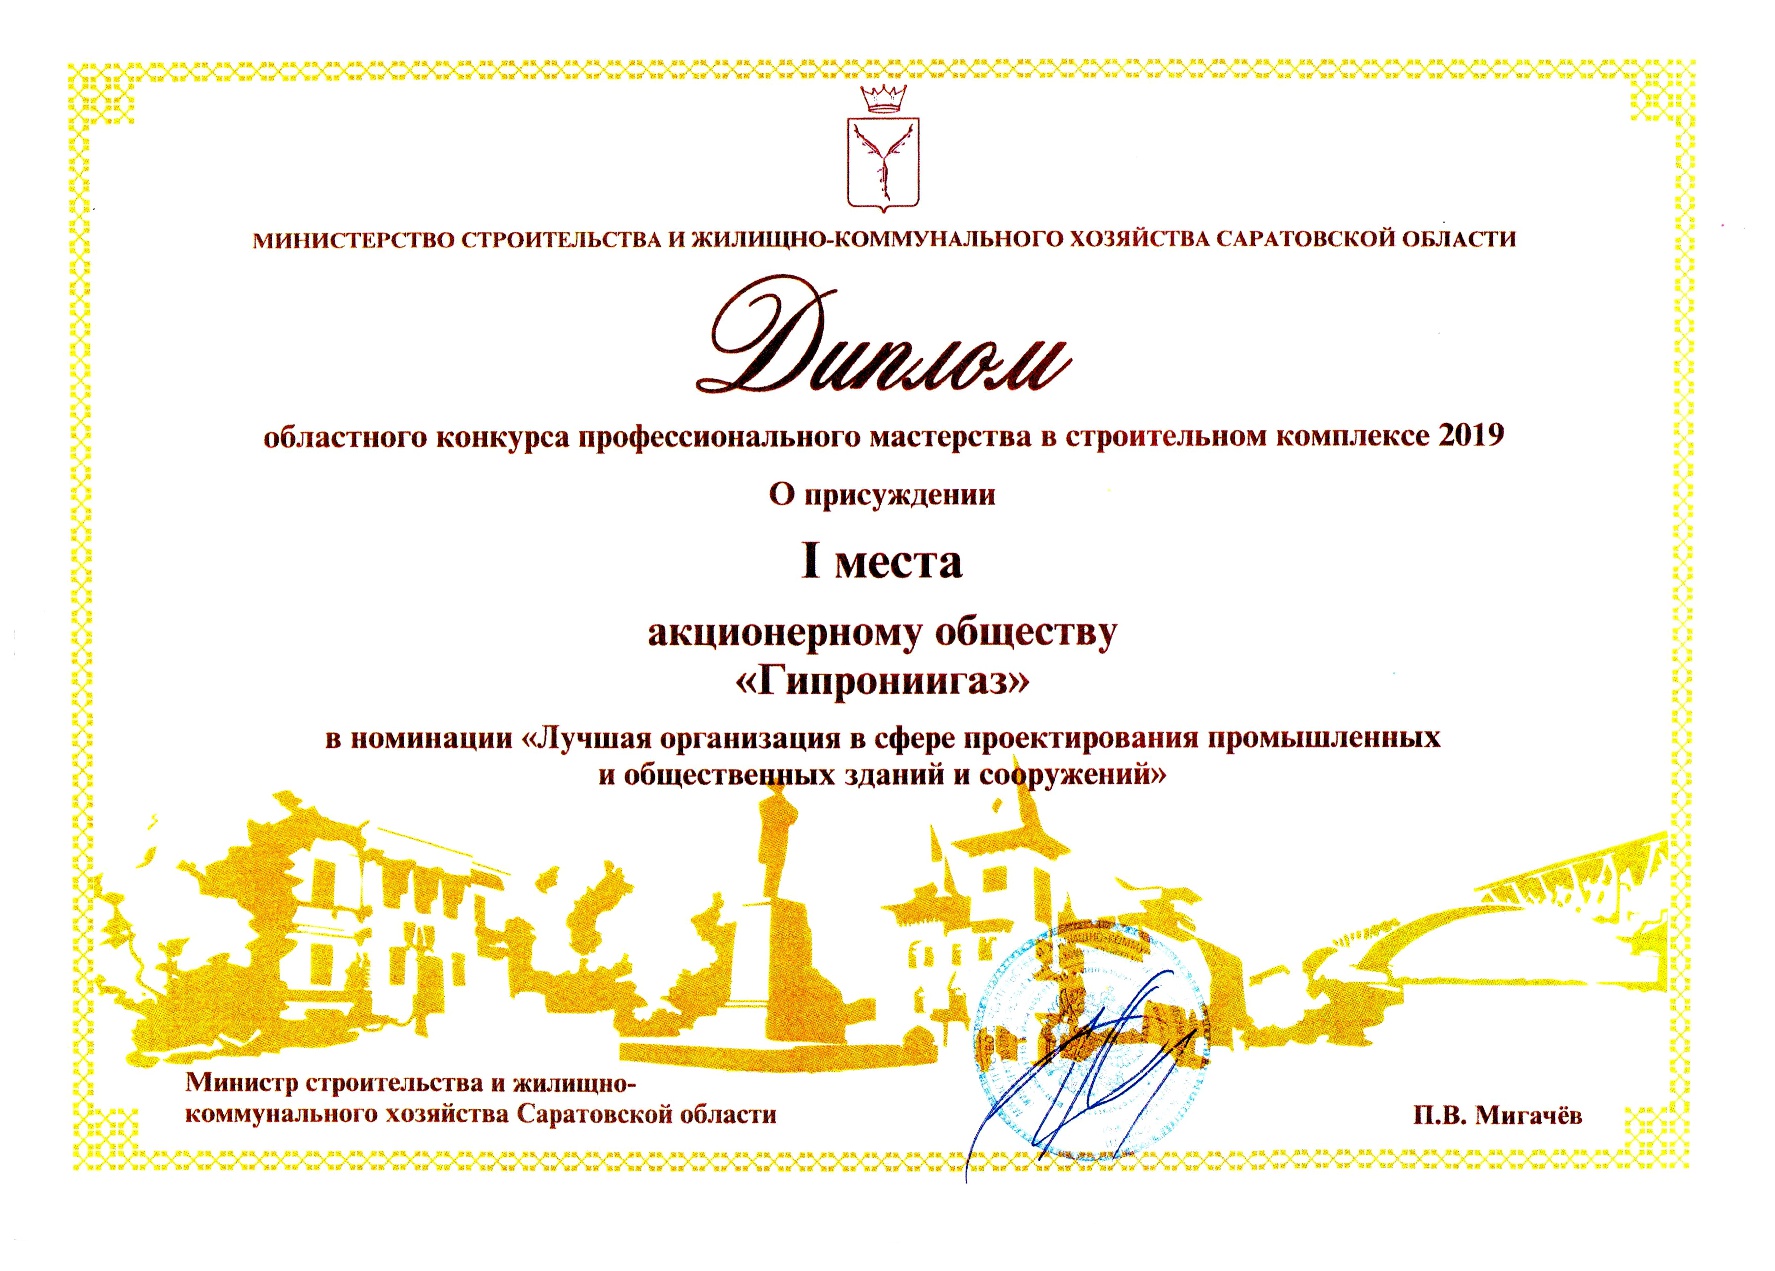 АО «Гипрониигаз» признано победителем в номинации областного конкурса профессионального мастерства в строительном комплексе